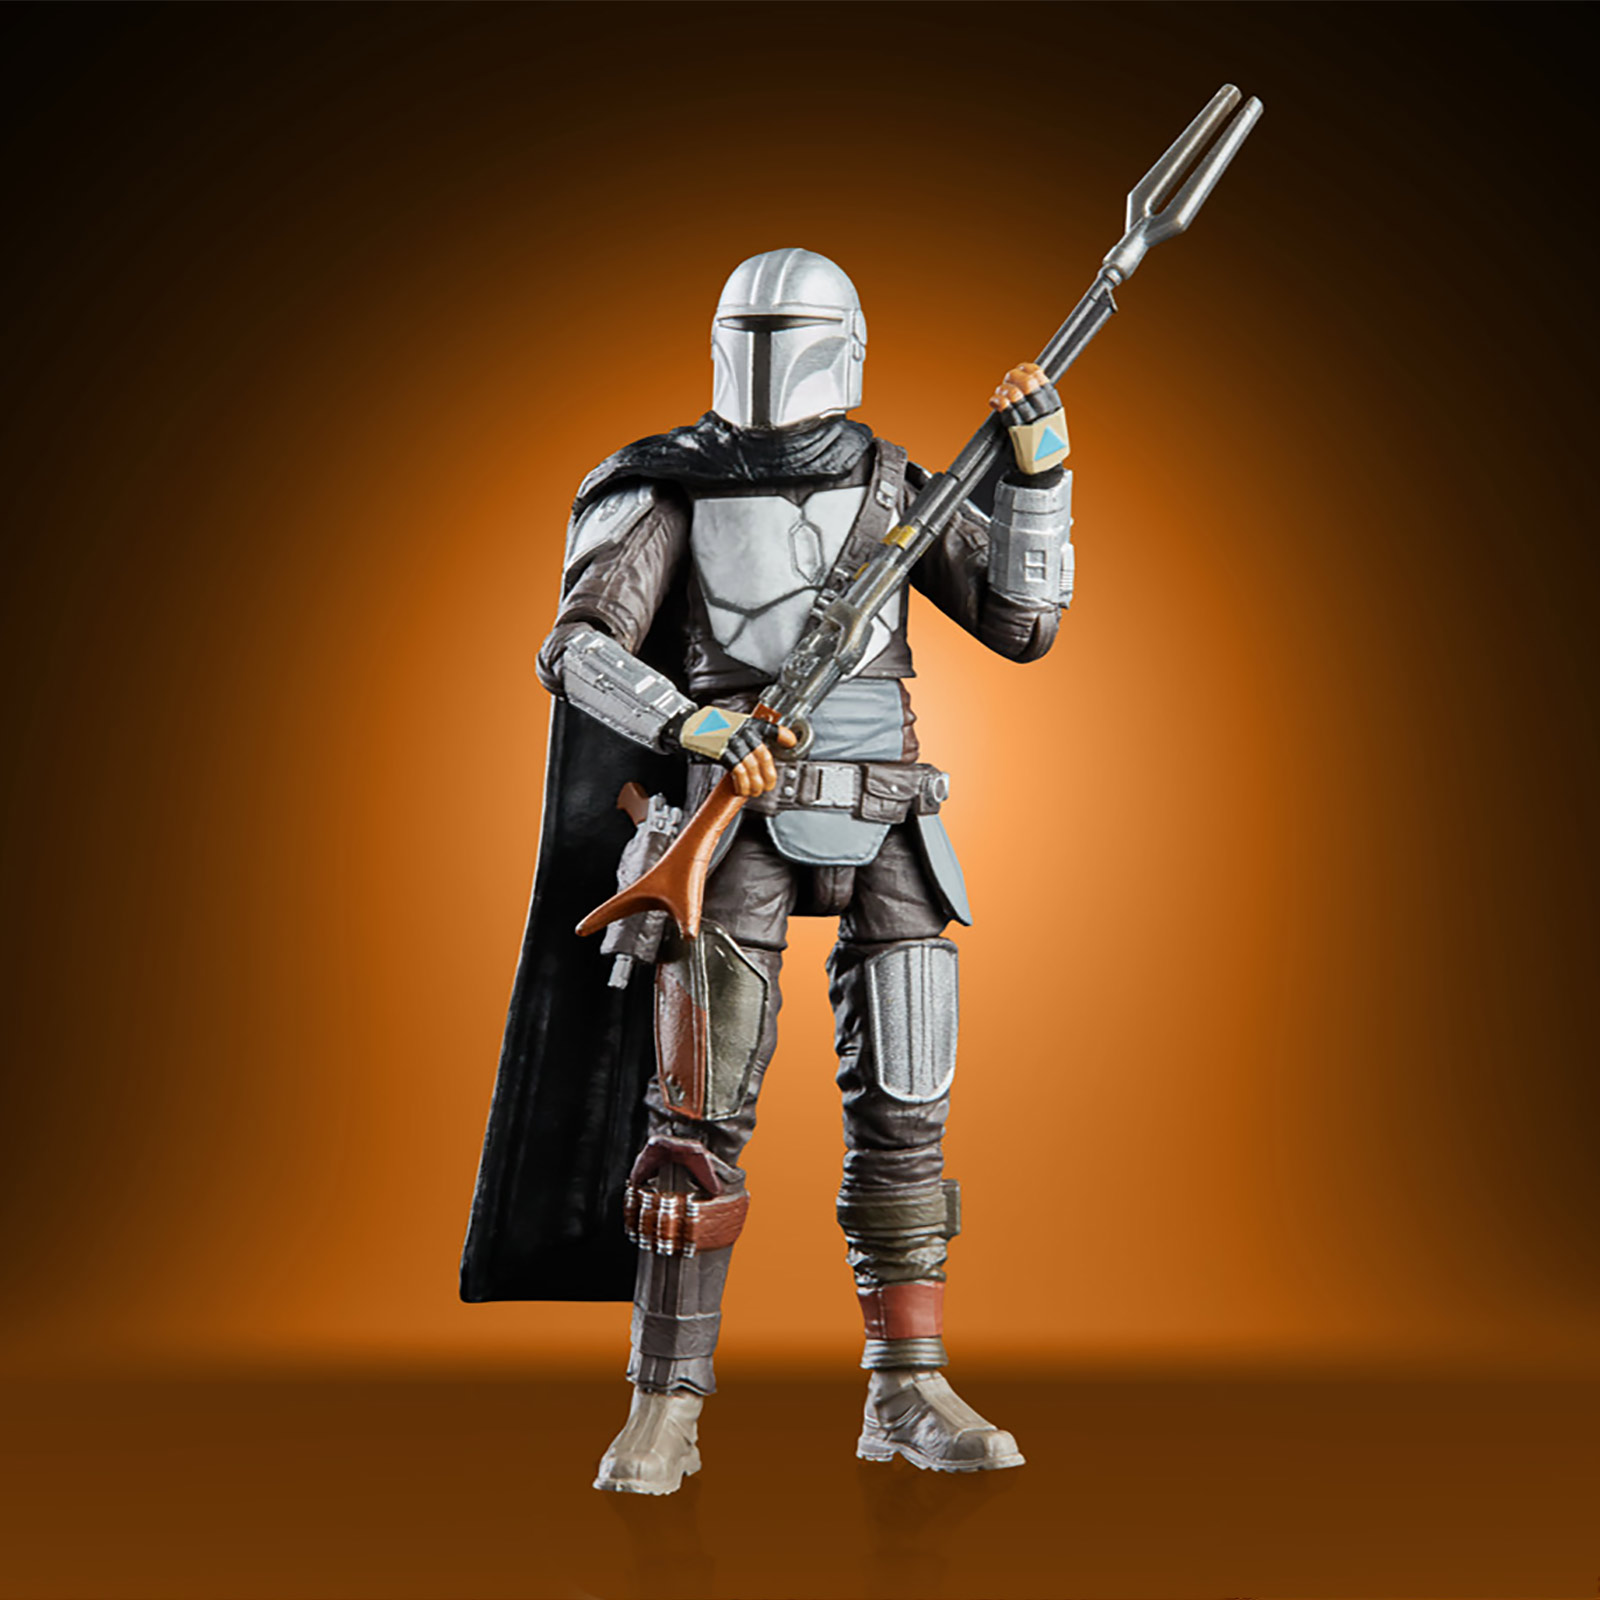 Mandalorianer Actionfigur 10 cm - Star Wars